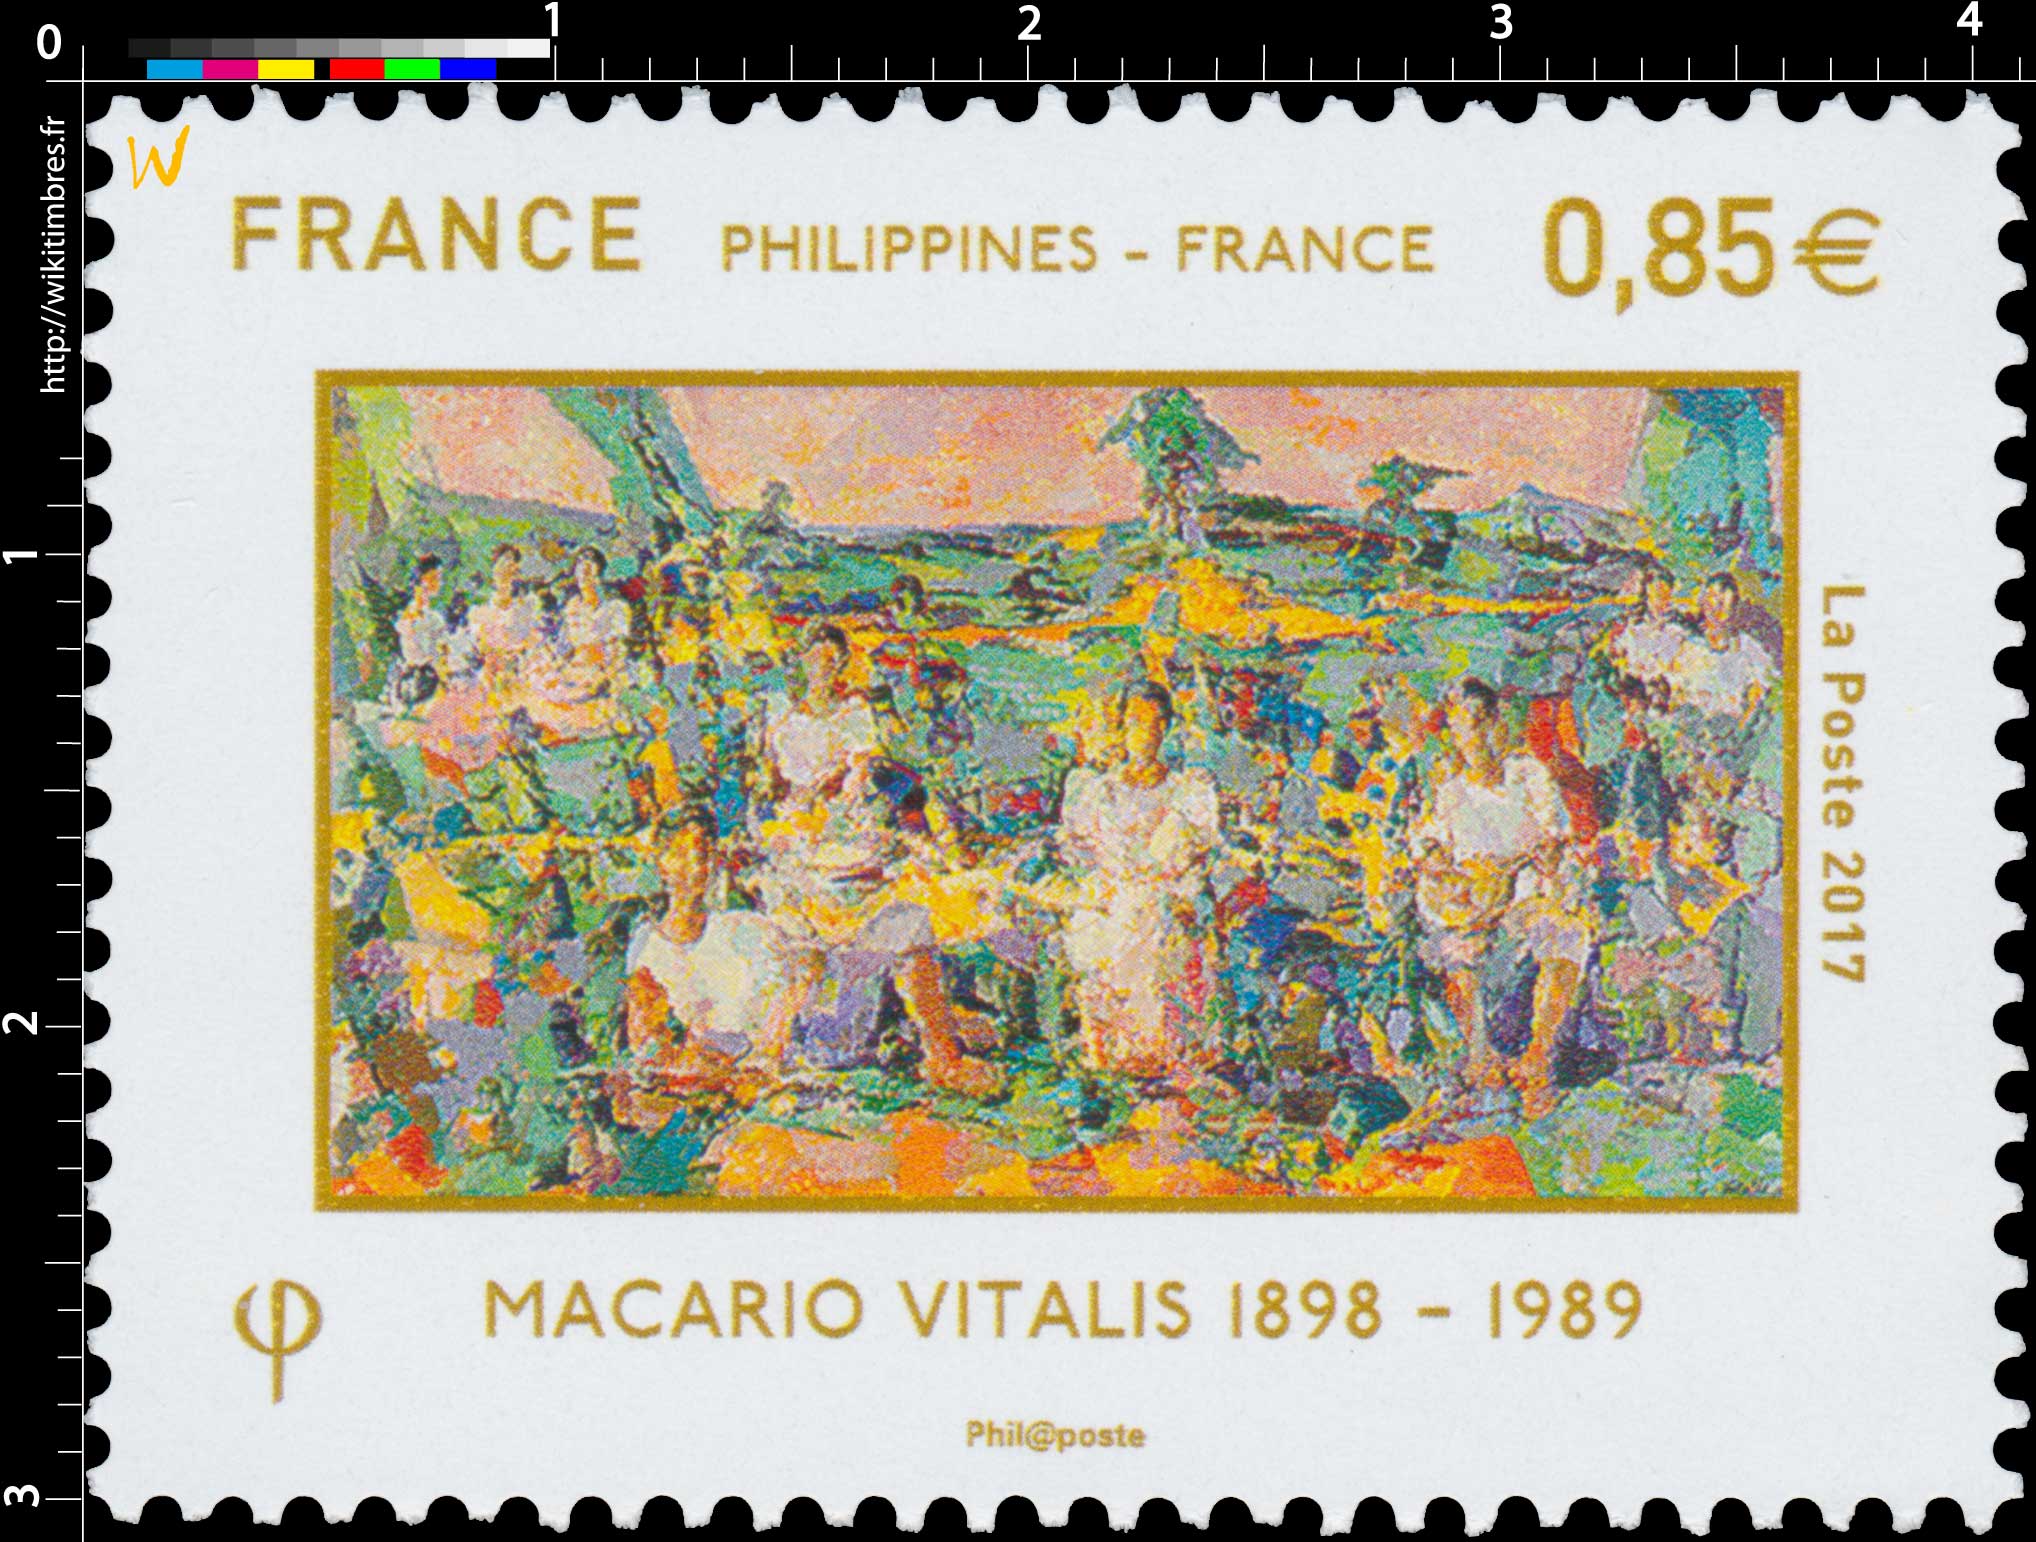 2017 Philippines - France - Macario Vitalis 1898 - 1989